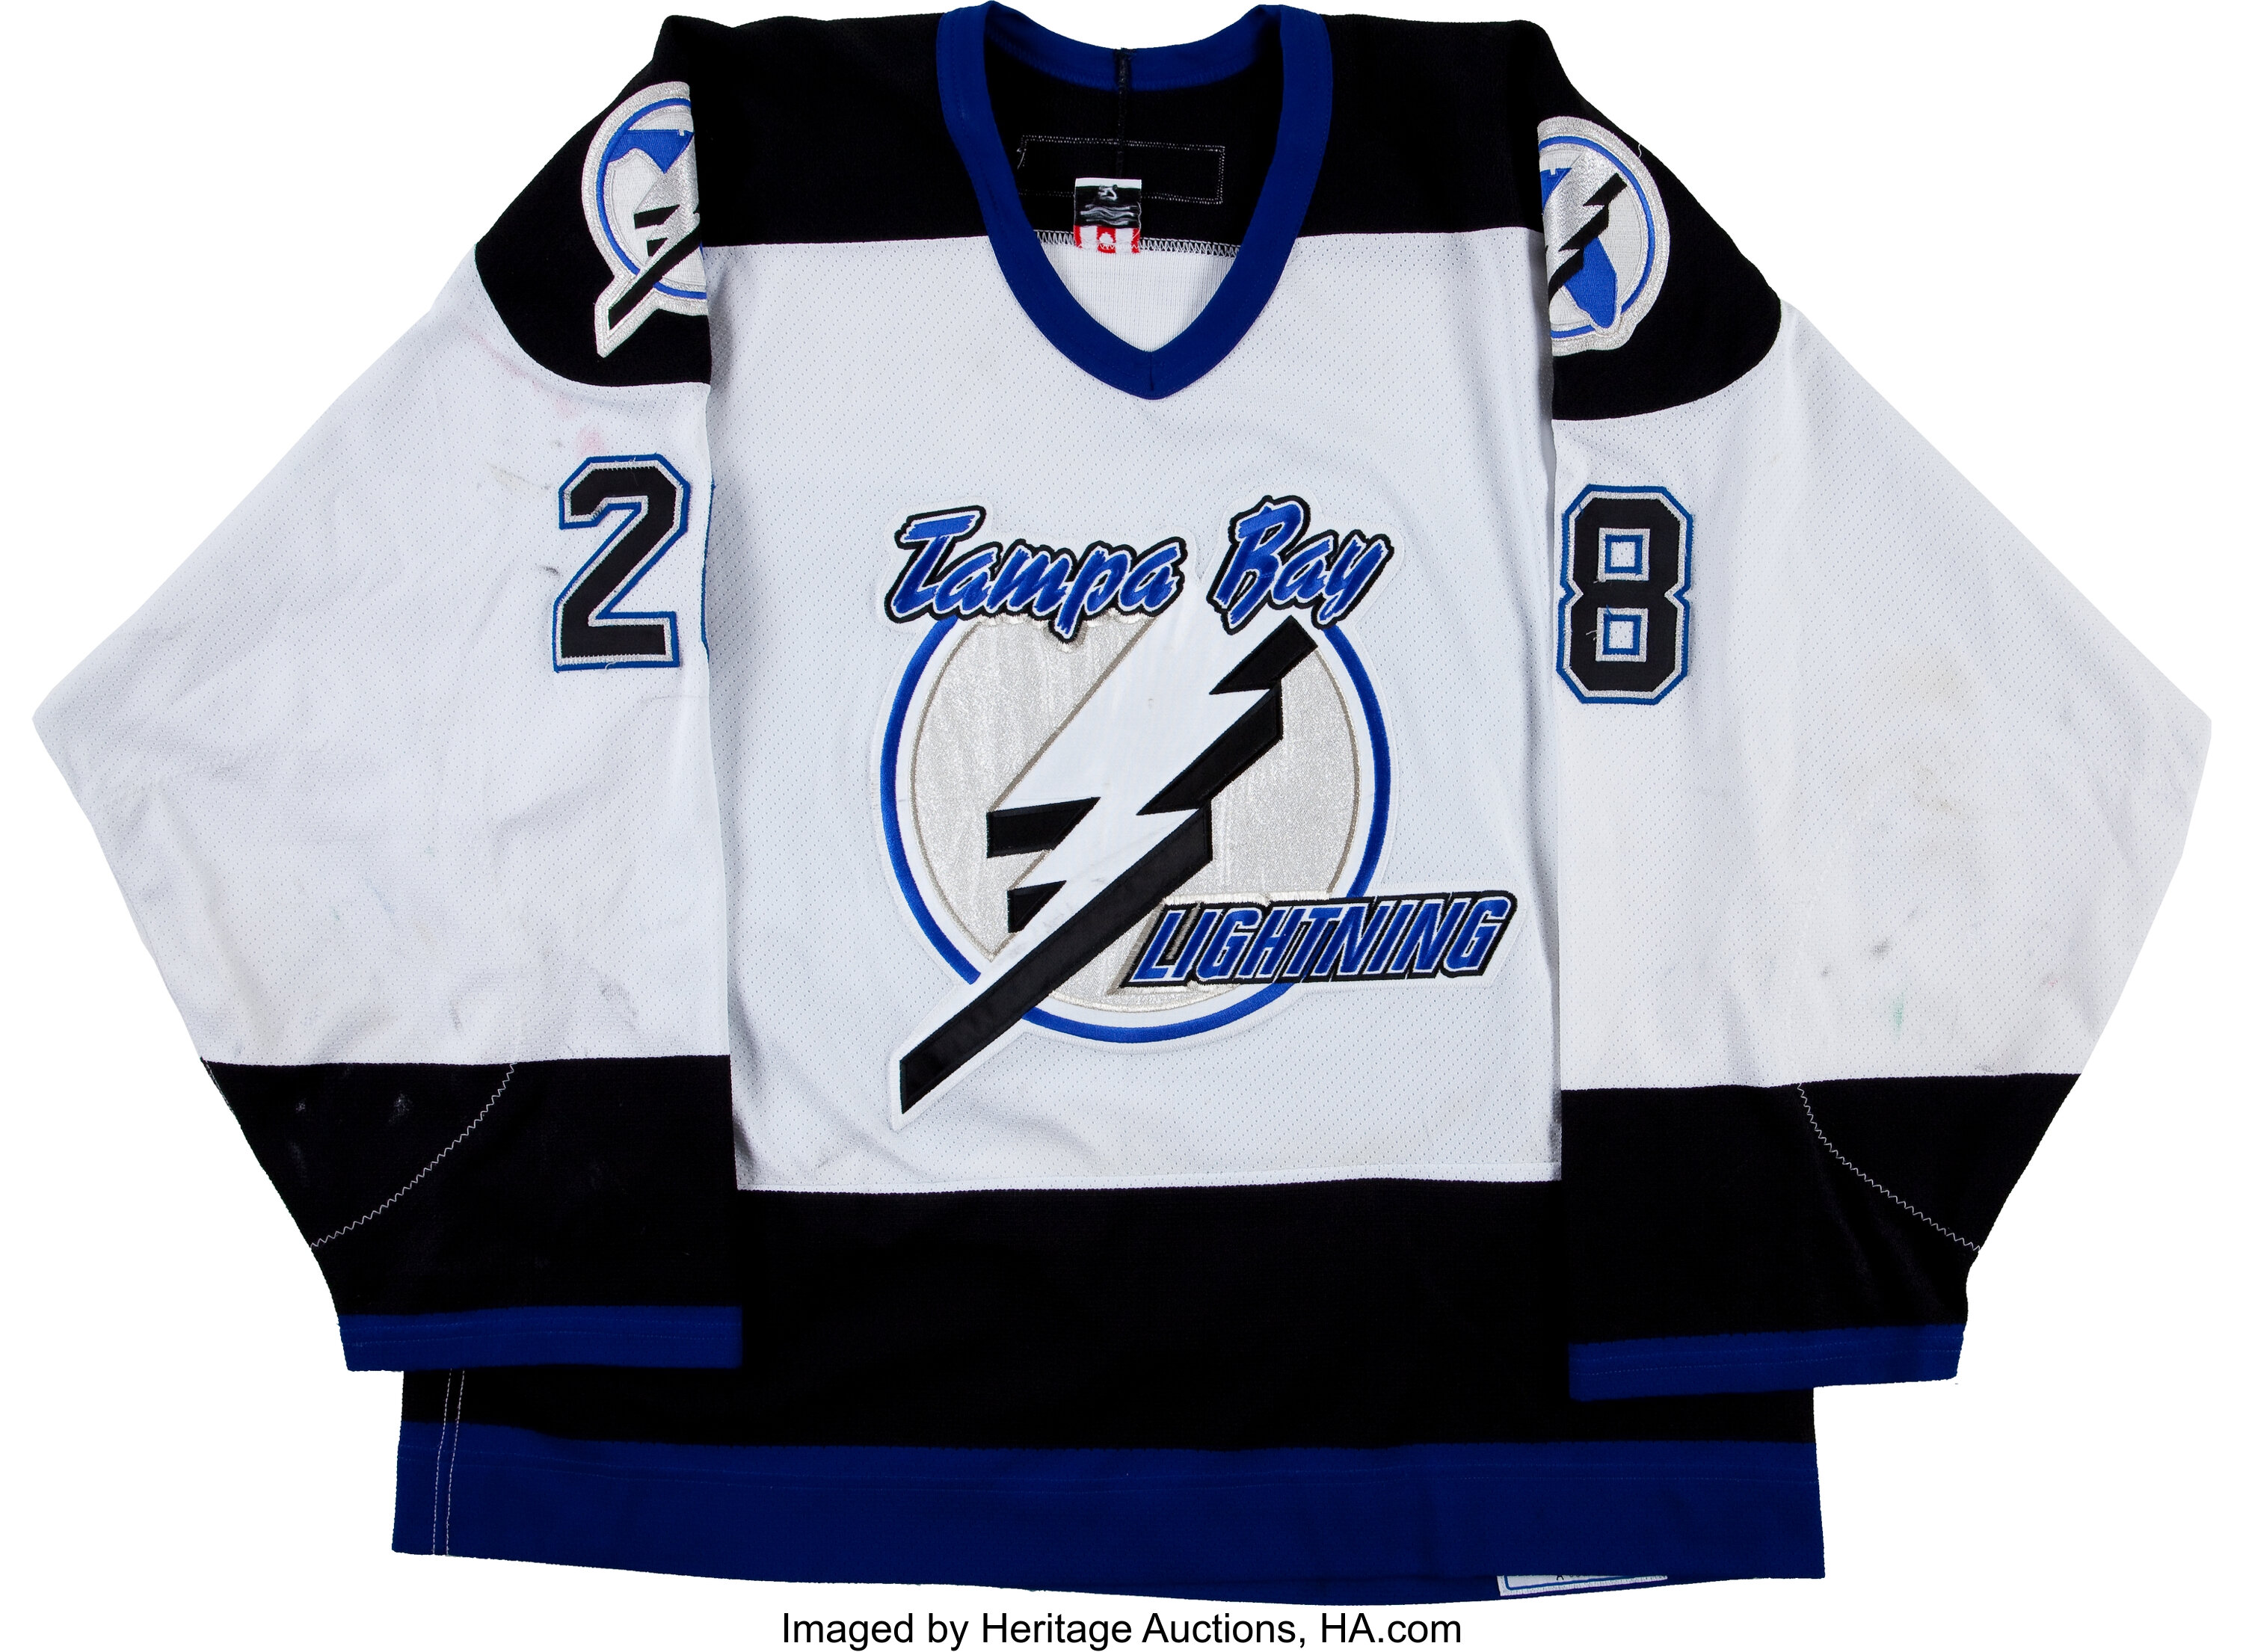 2002-03 Sheldon Keefe Game Worn Tampa Bay Lightning Jersey